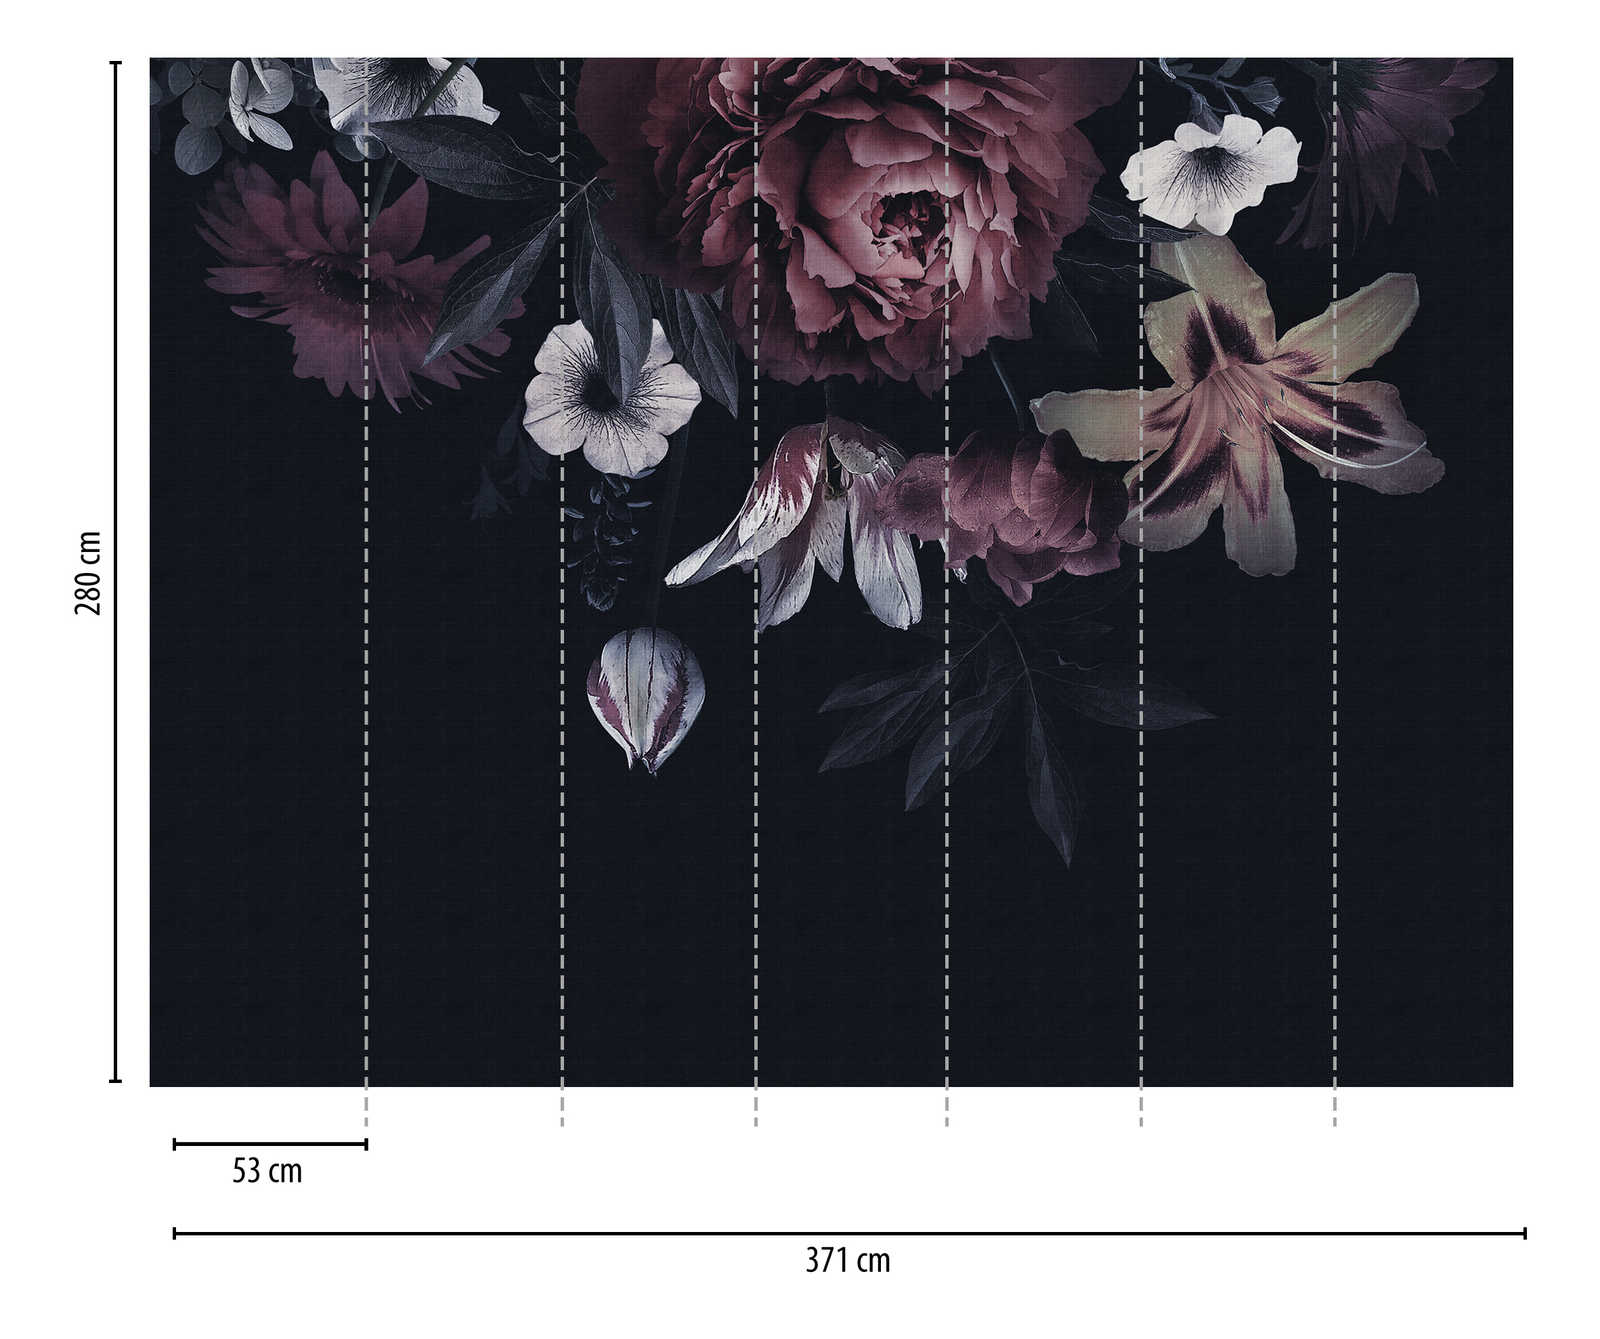             Papeles pintados novedad | motivo oscuro papel pintado flores en estilo pintura
        